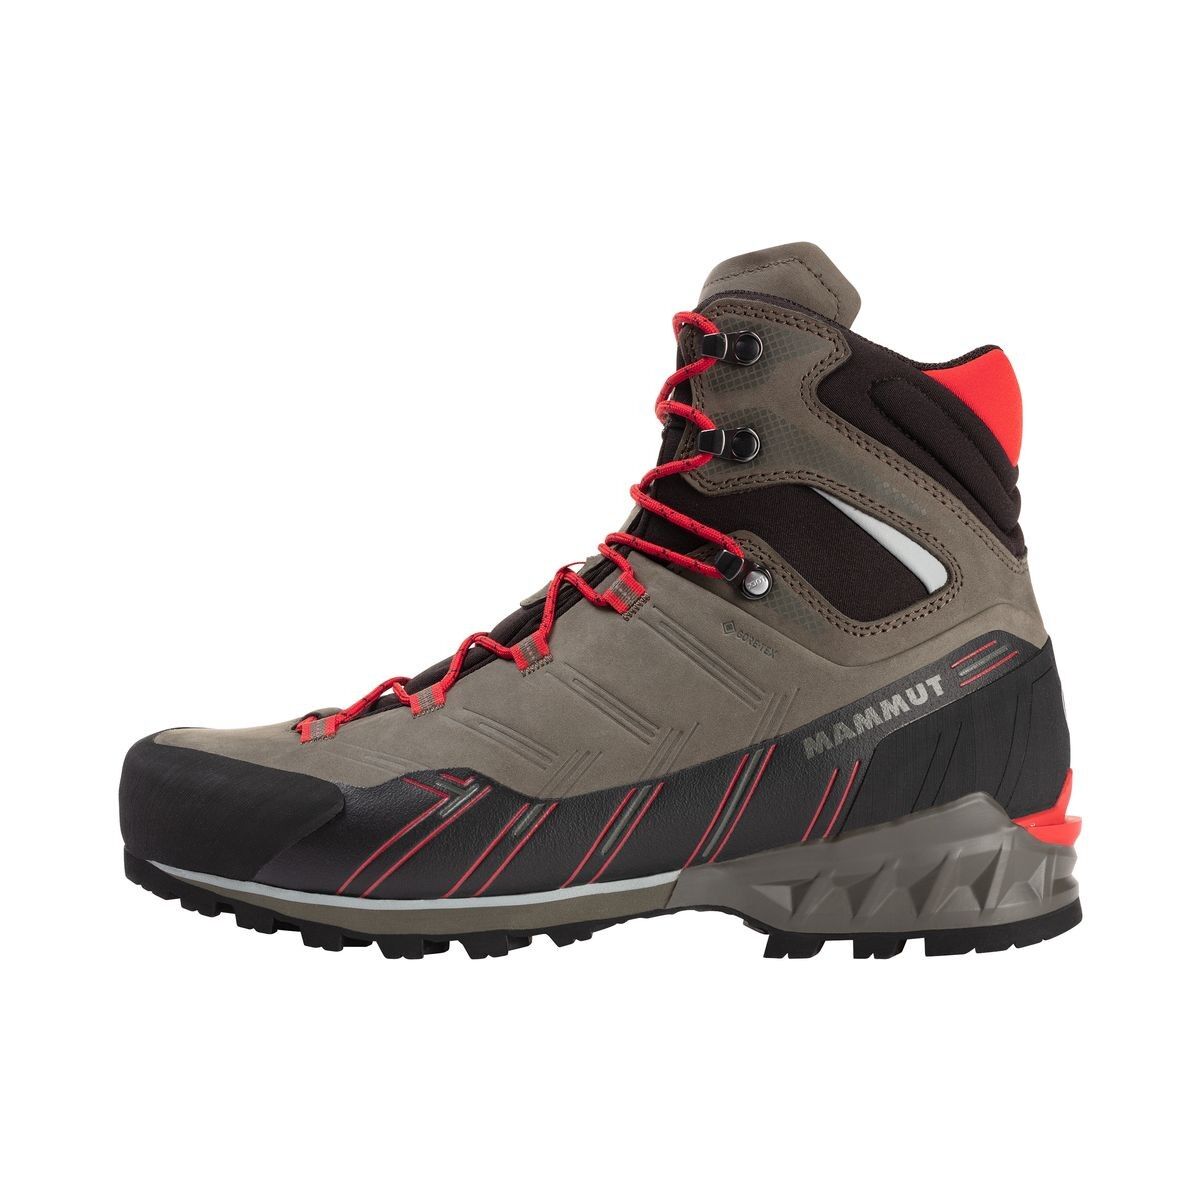 Mammut Kento Guide High GTX - Trekking boots - Men's